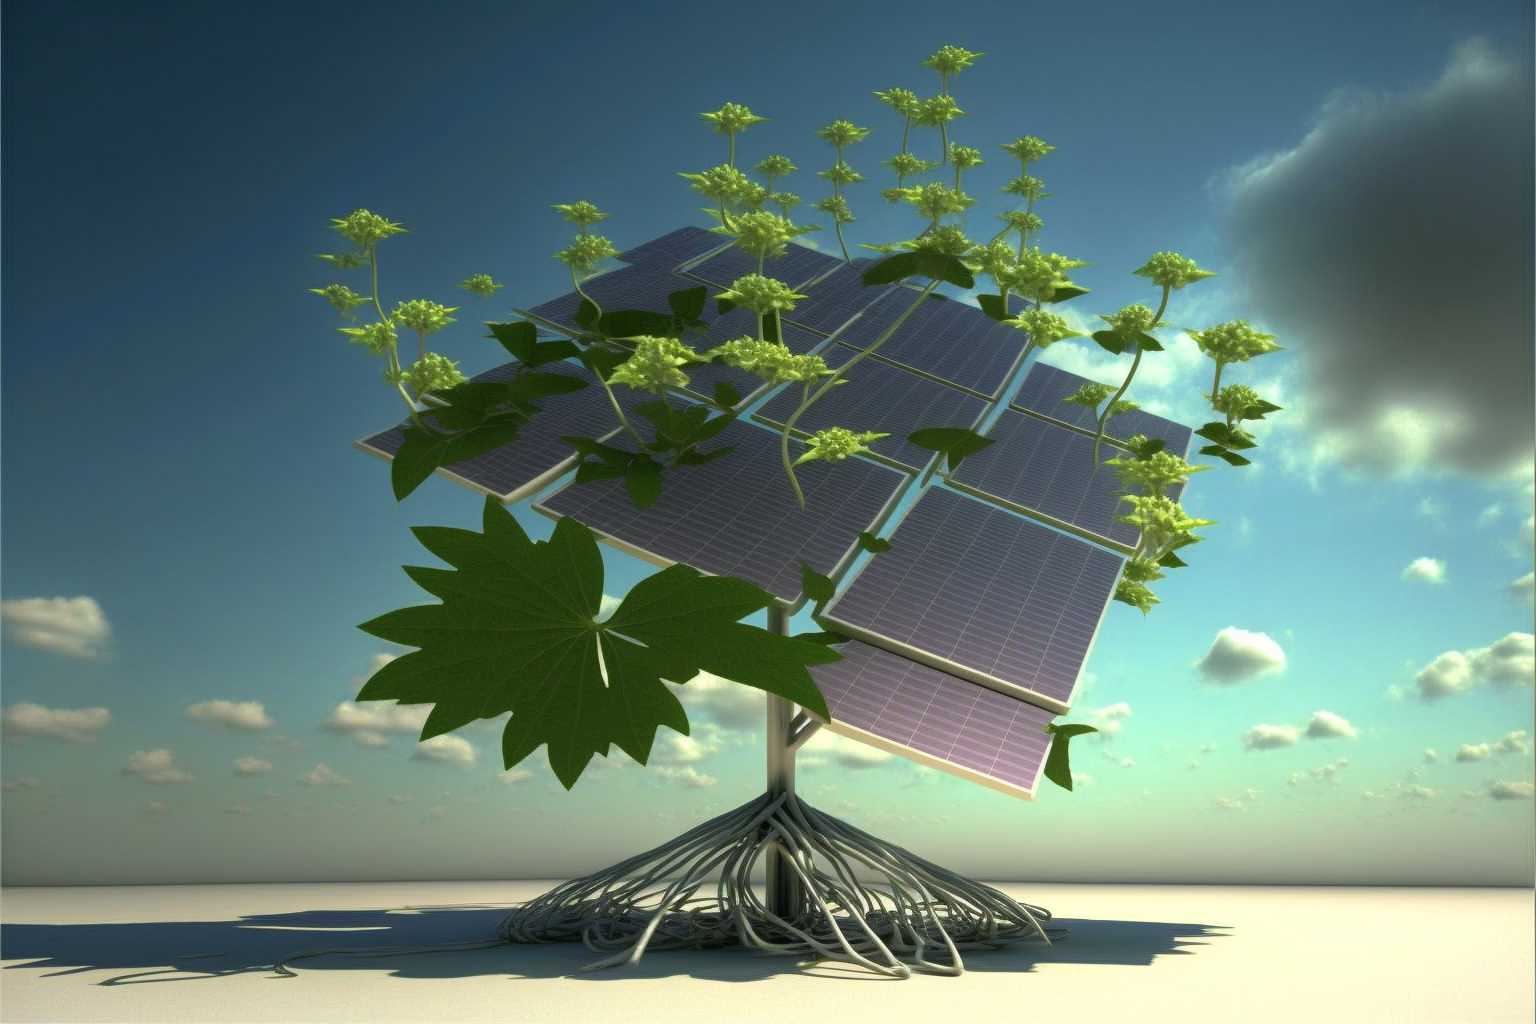 Bio-Photovoltaik macht Pflanzen zu lebenden Solarzellen